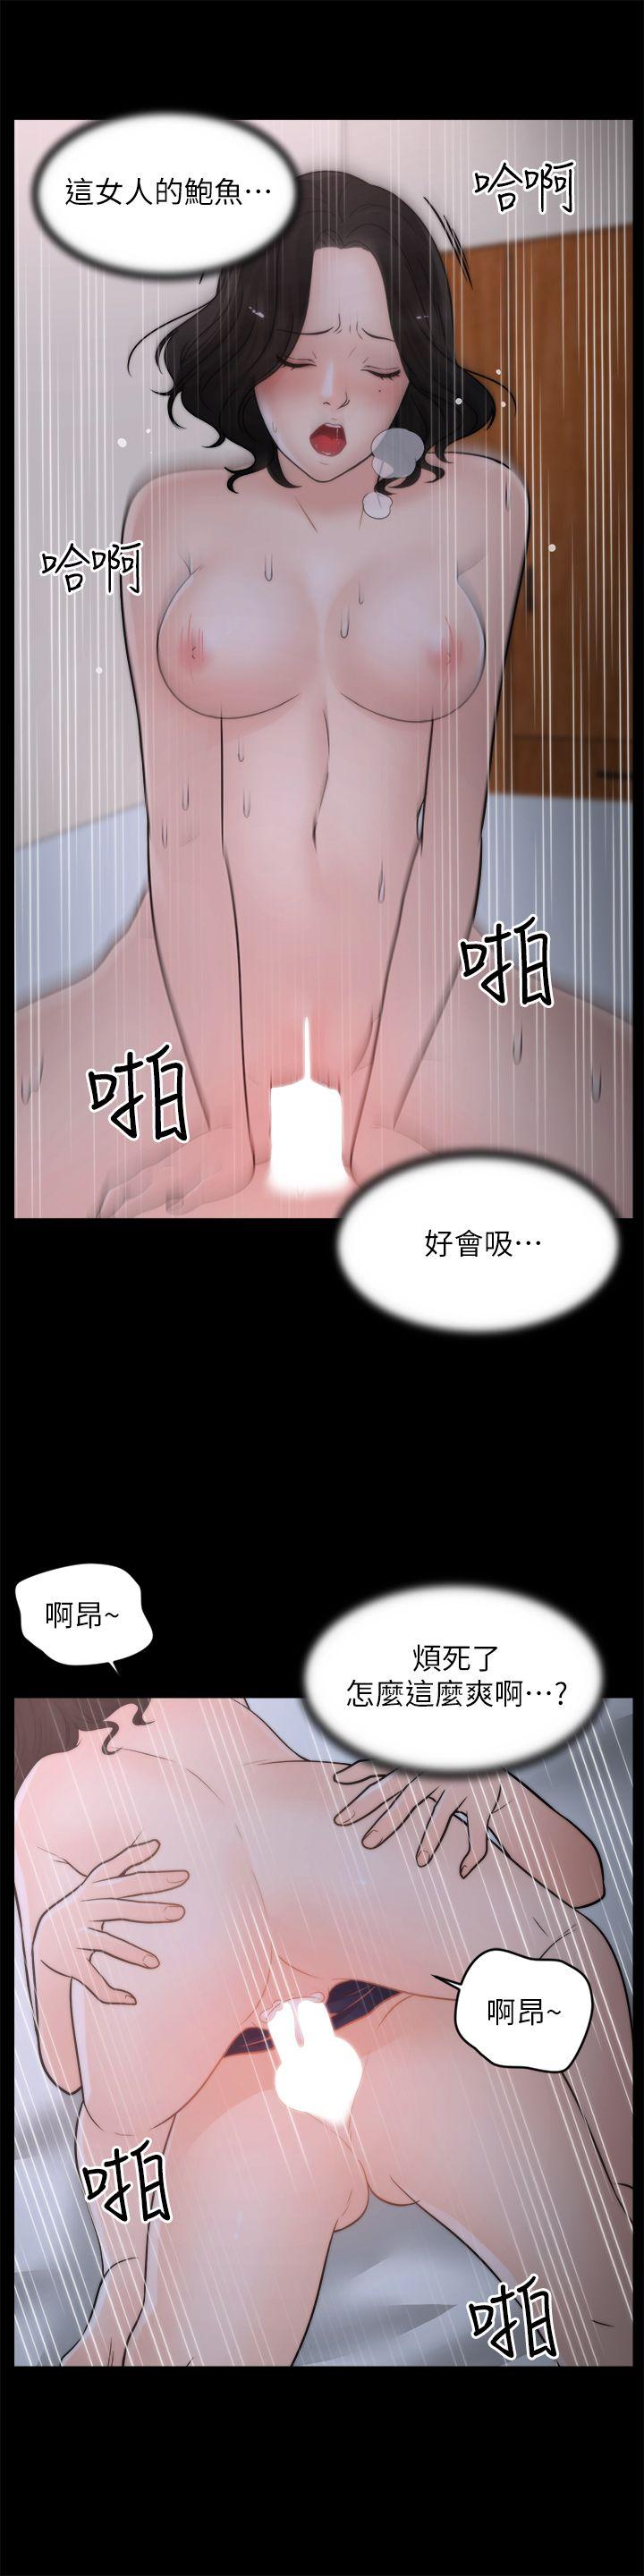 韩国污漫画 偷偷愛 第31话-怀念的好滋味 8